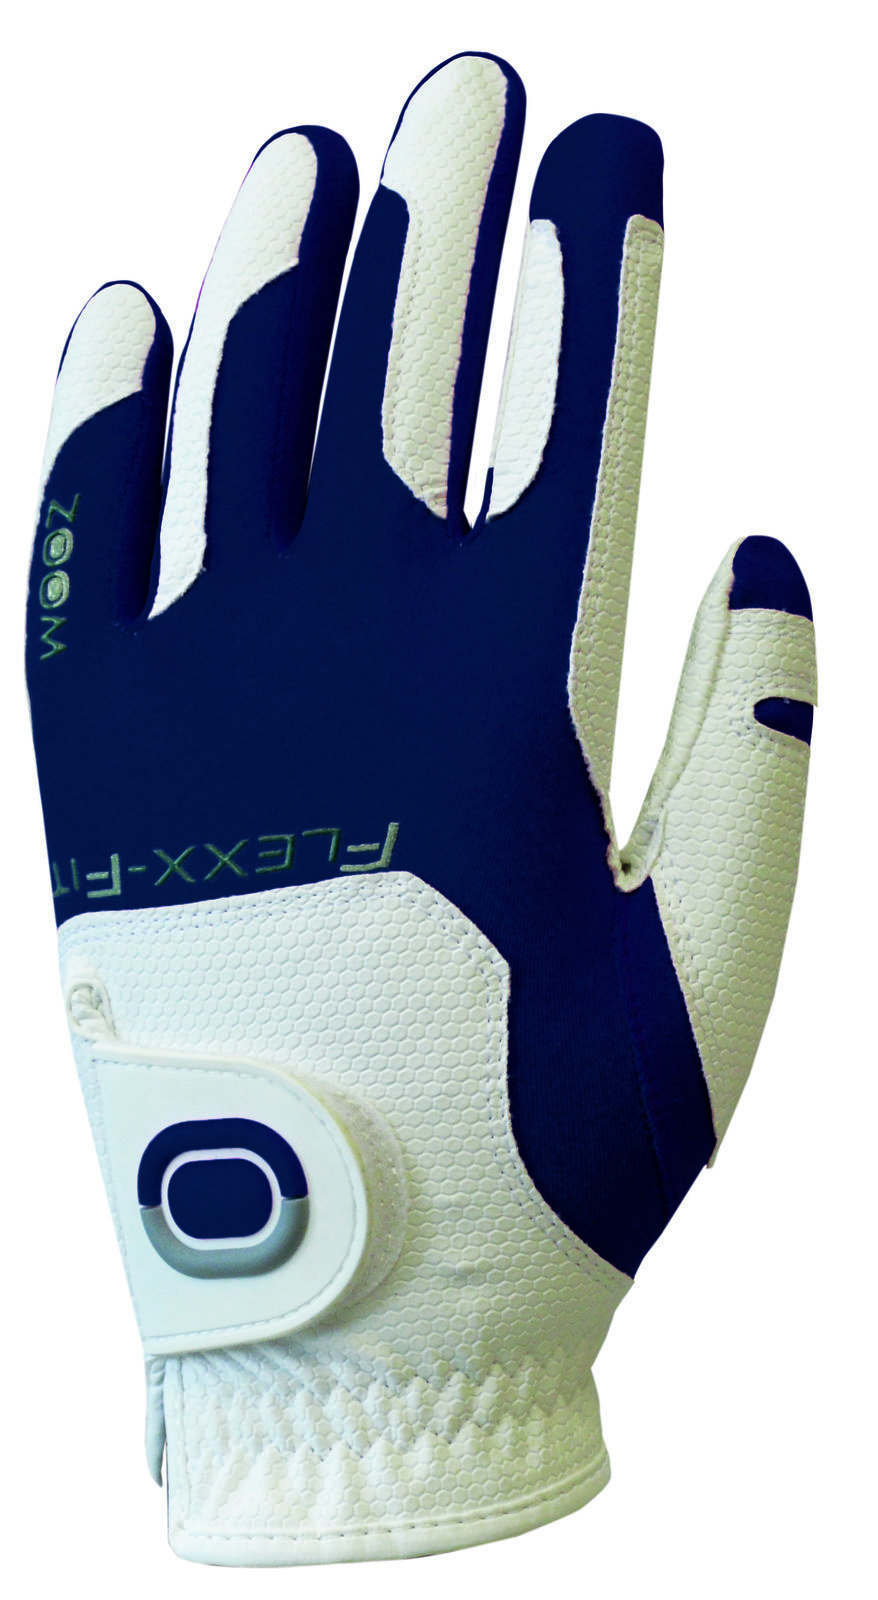 Gloves Zoom Gloves Weather Mens Golf Glove White/Navy LH